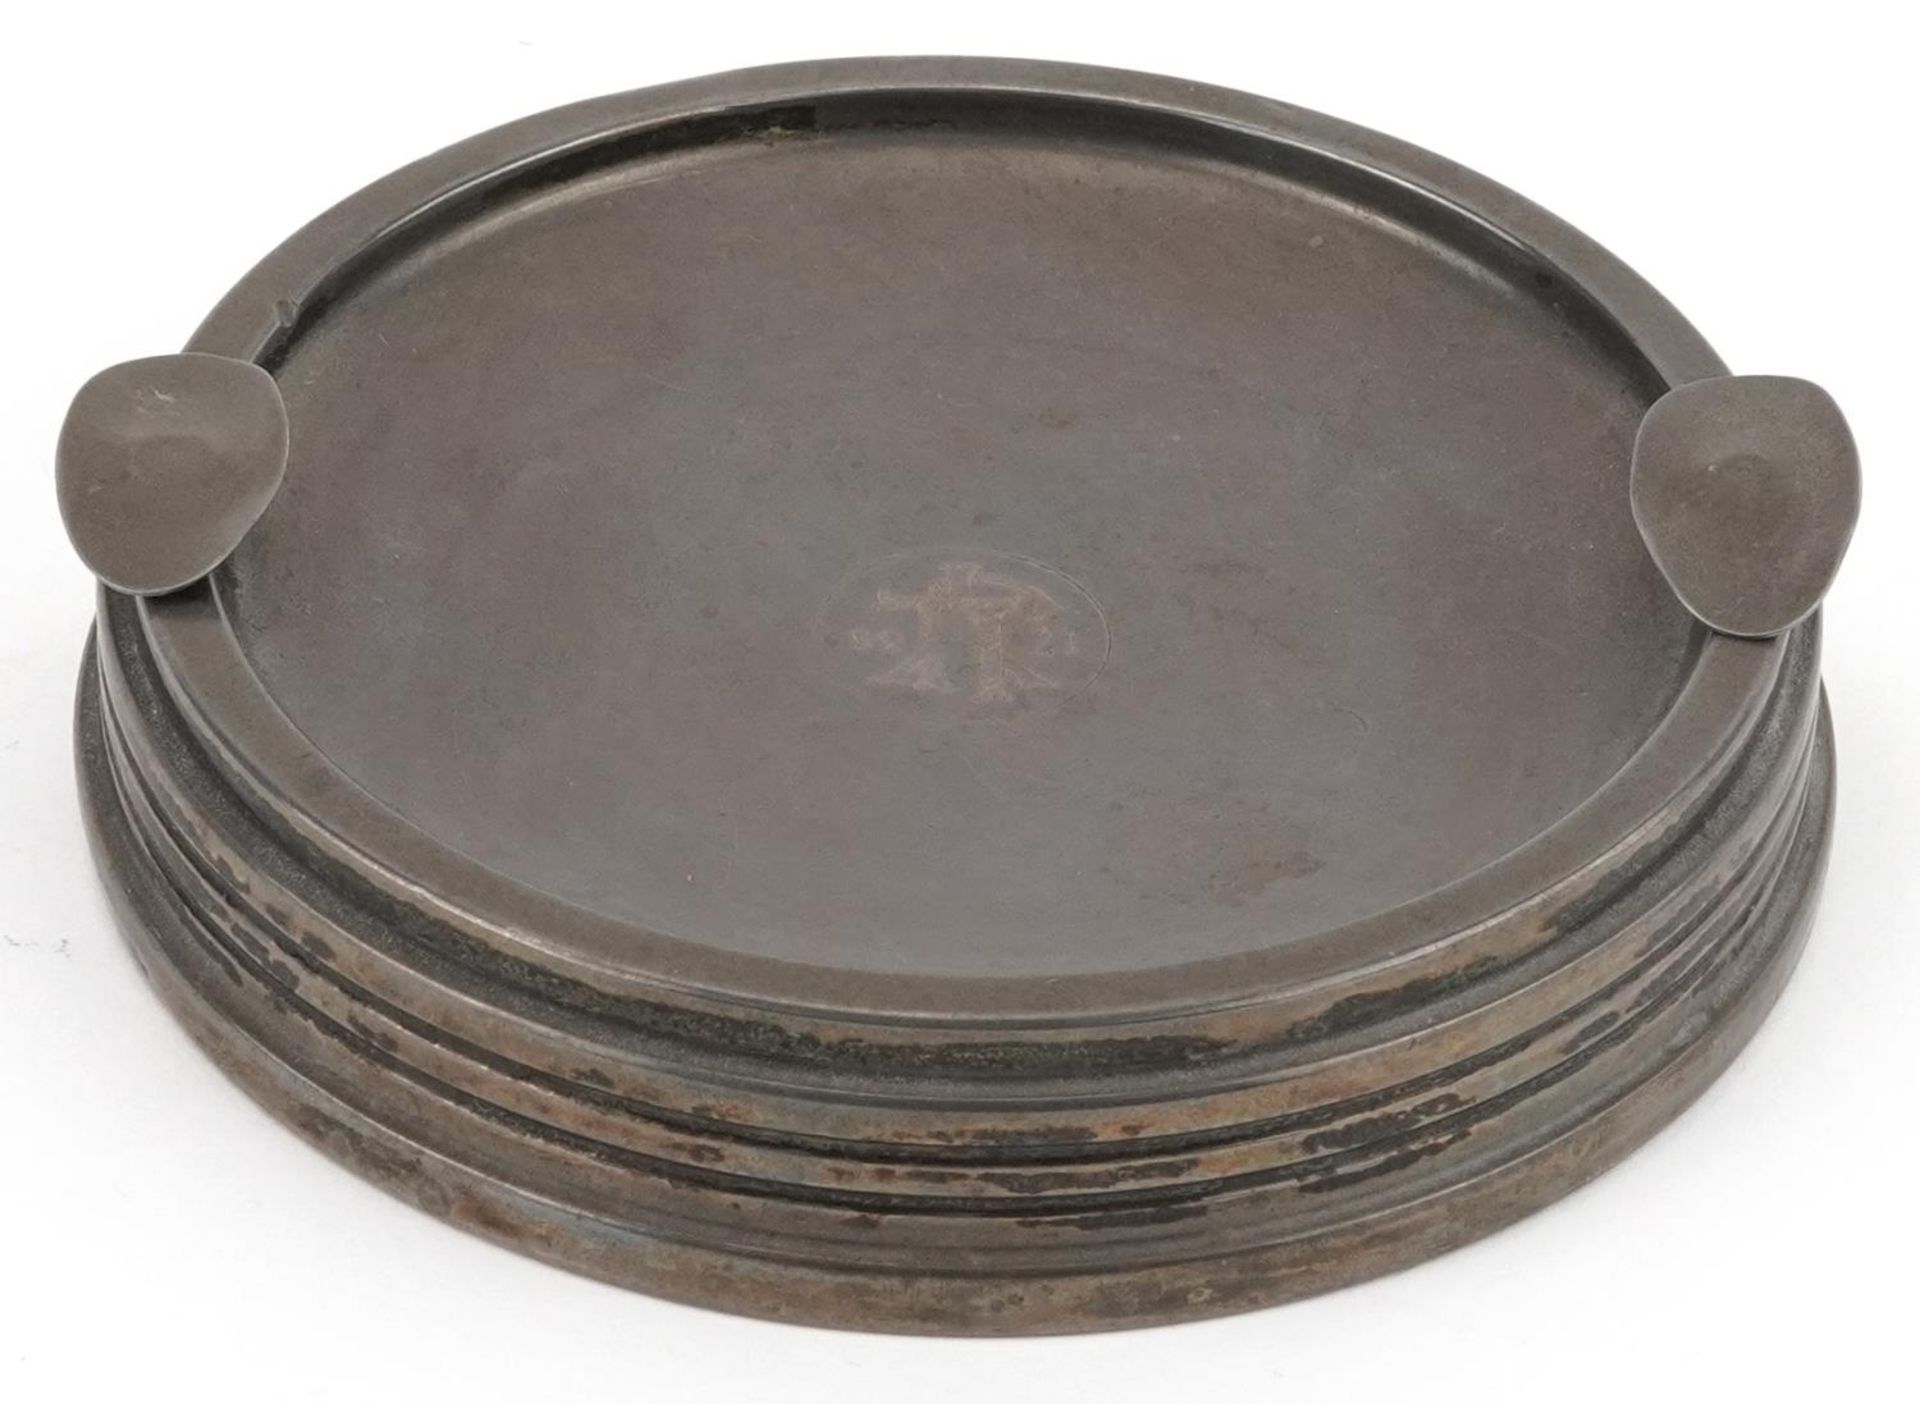 Sanders & Mackenzie, Elizabeth II circular silver and ebony ashtray, Birmingham 1958, 12.2cm in